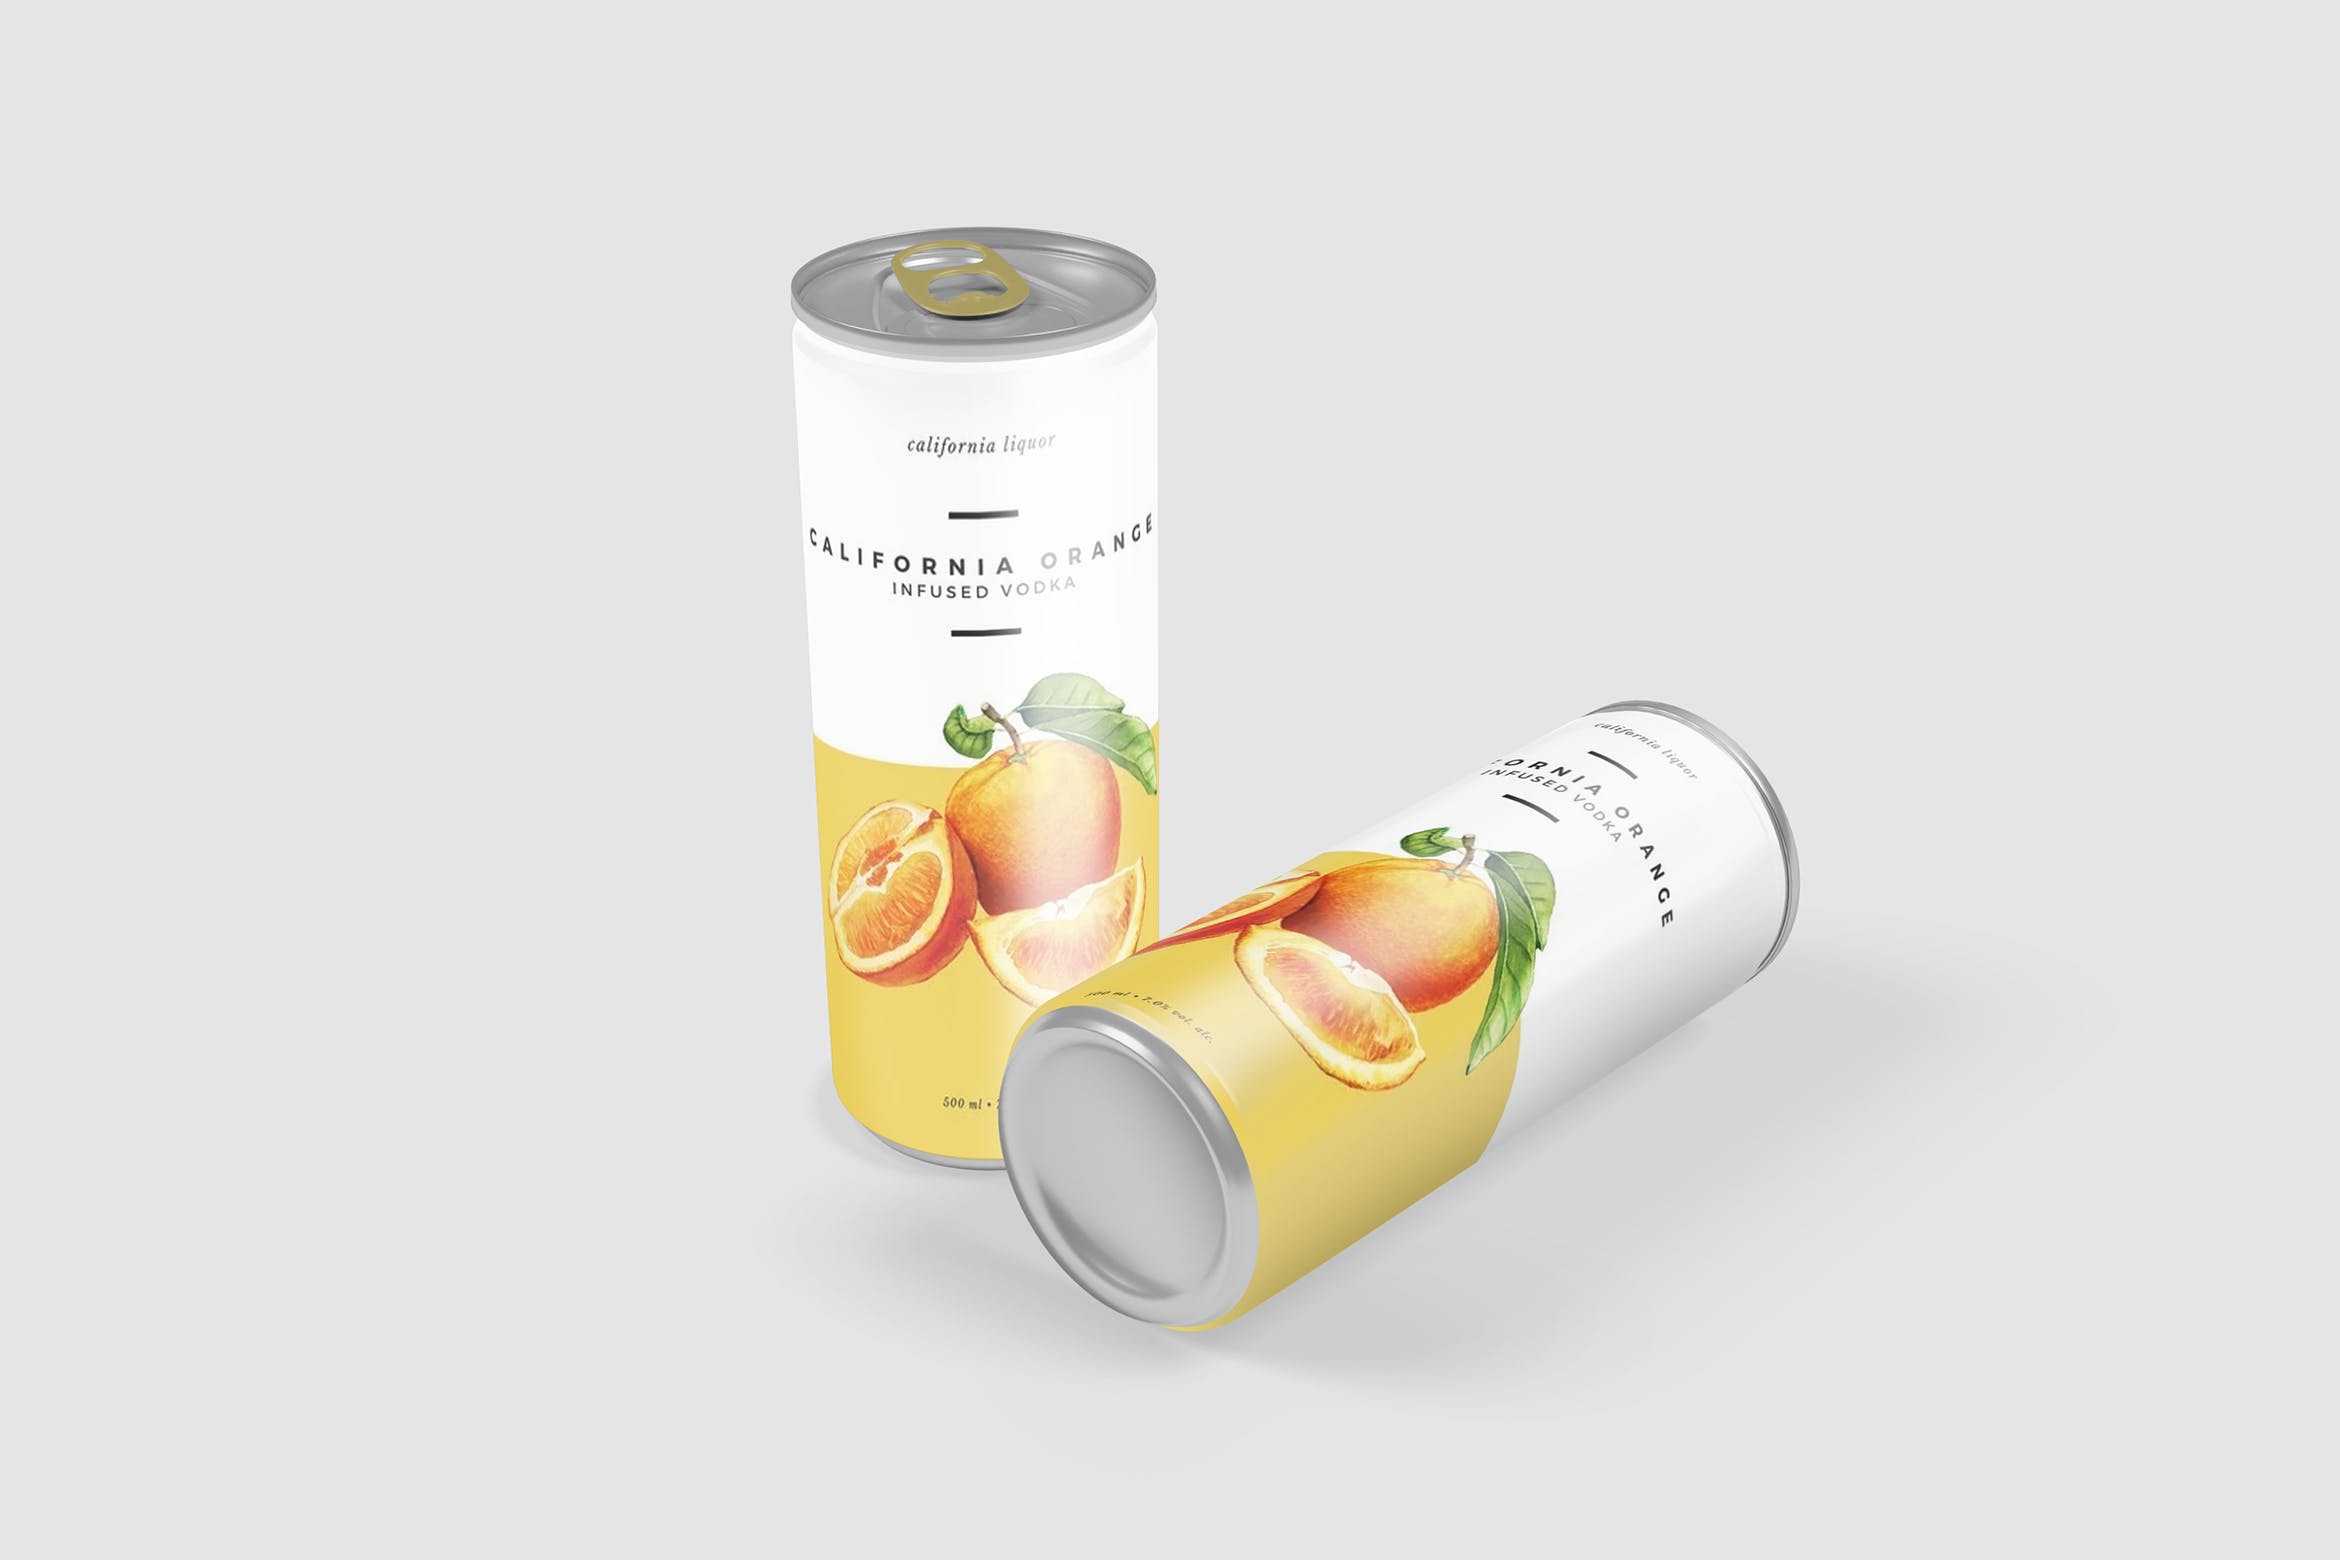 软饮料罐头产品外观设计素材库精选 Softdrink Can Product Mockup插图